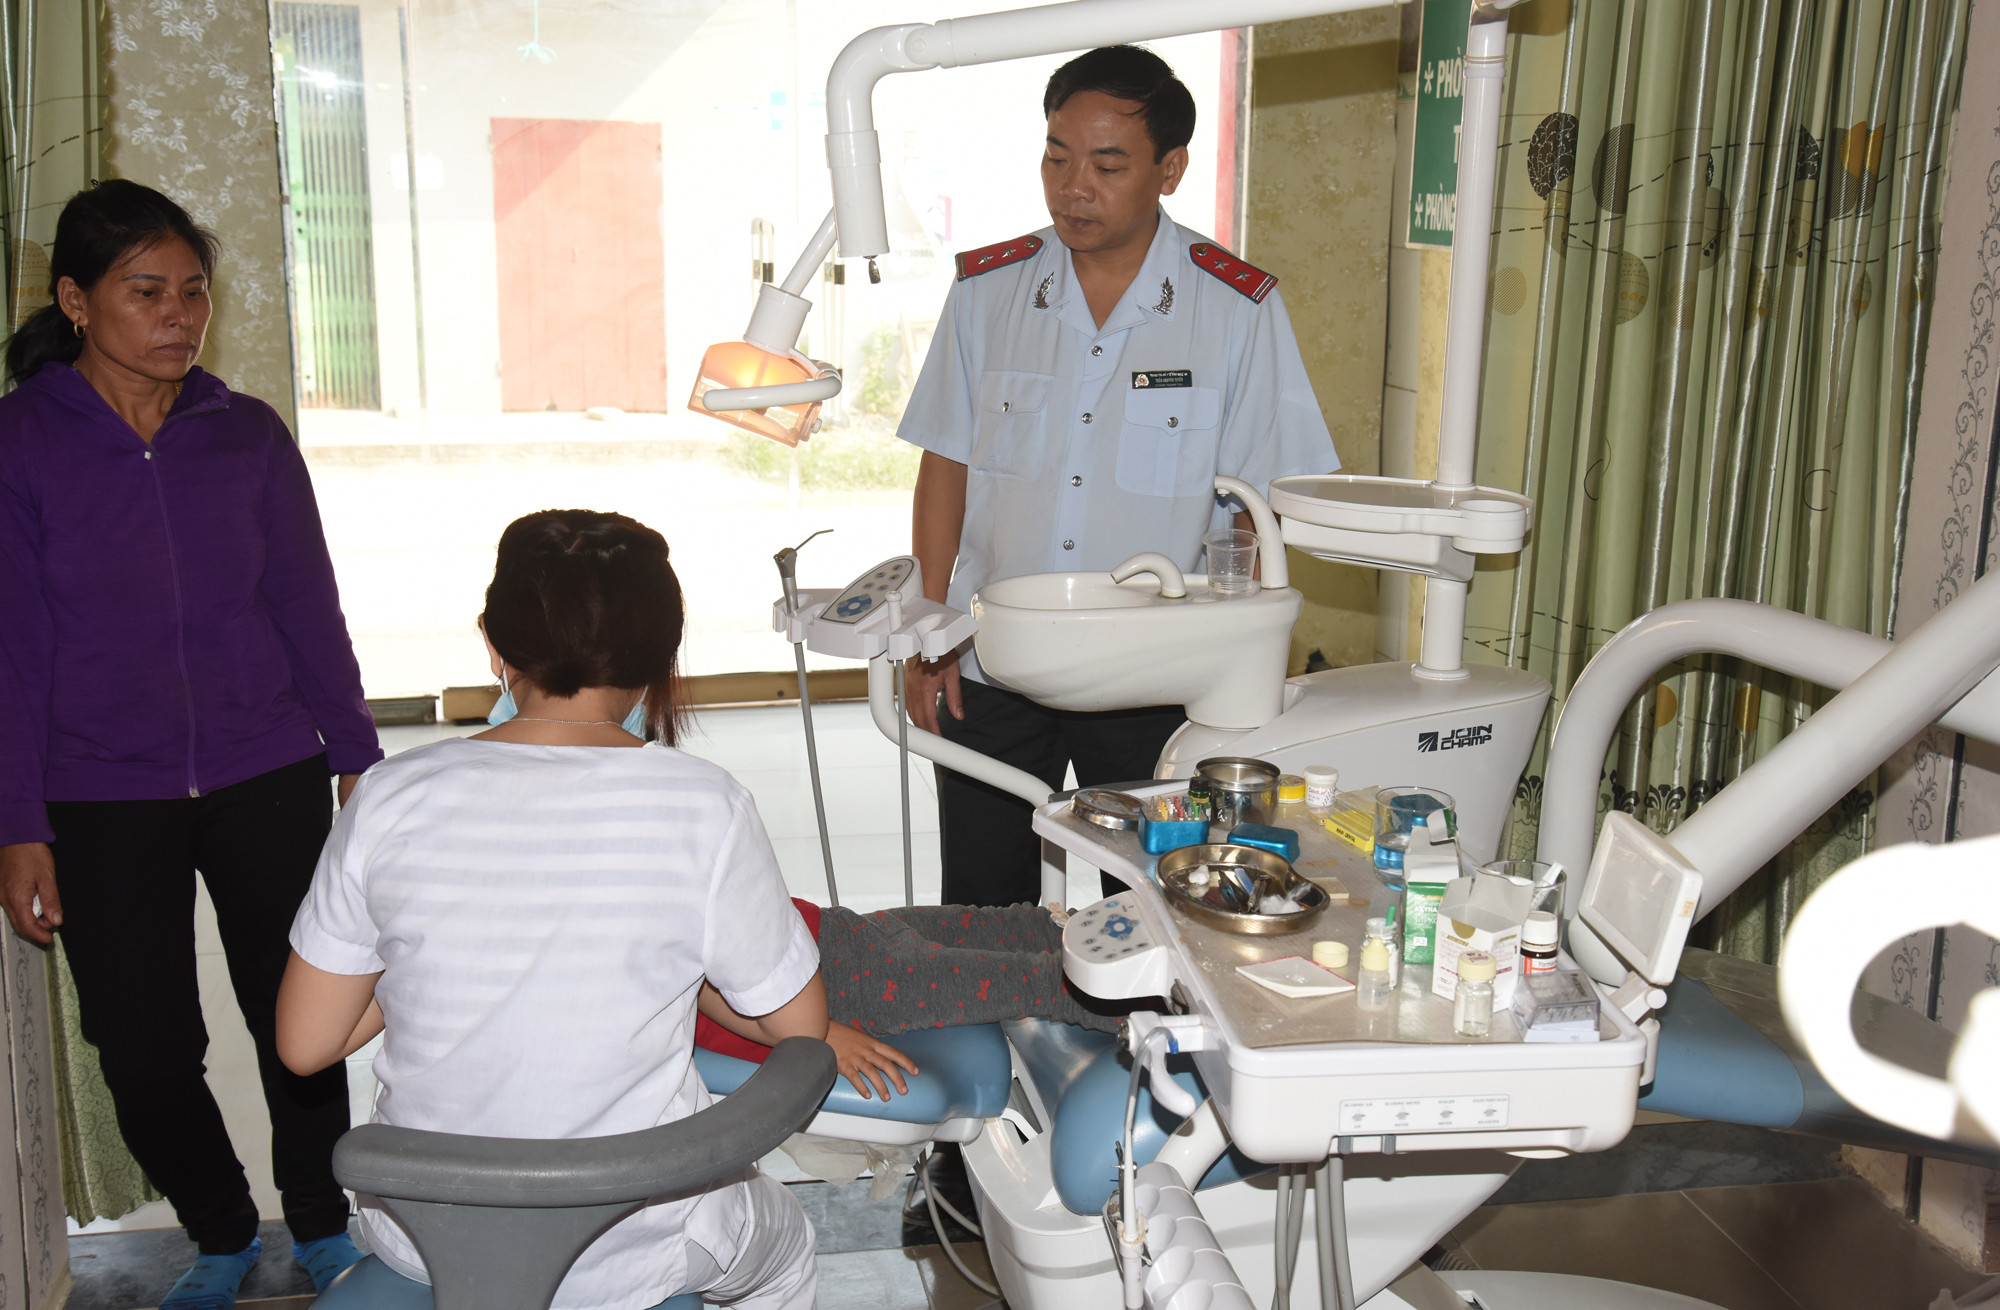 Tại thời điểm kiểm tra sáng ngày 8-10, điều dưỡng chưa có chứng chỉ hành nghề đang thực hiện xử lý tủy răng cho bệnh nhân. Ảnh: Thành Chung